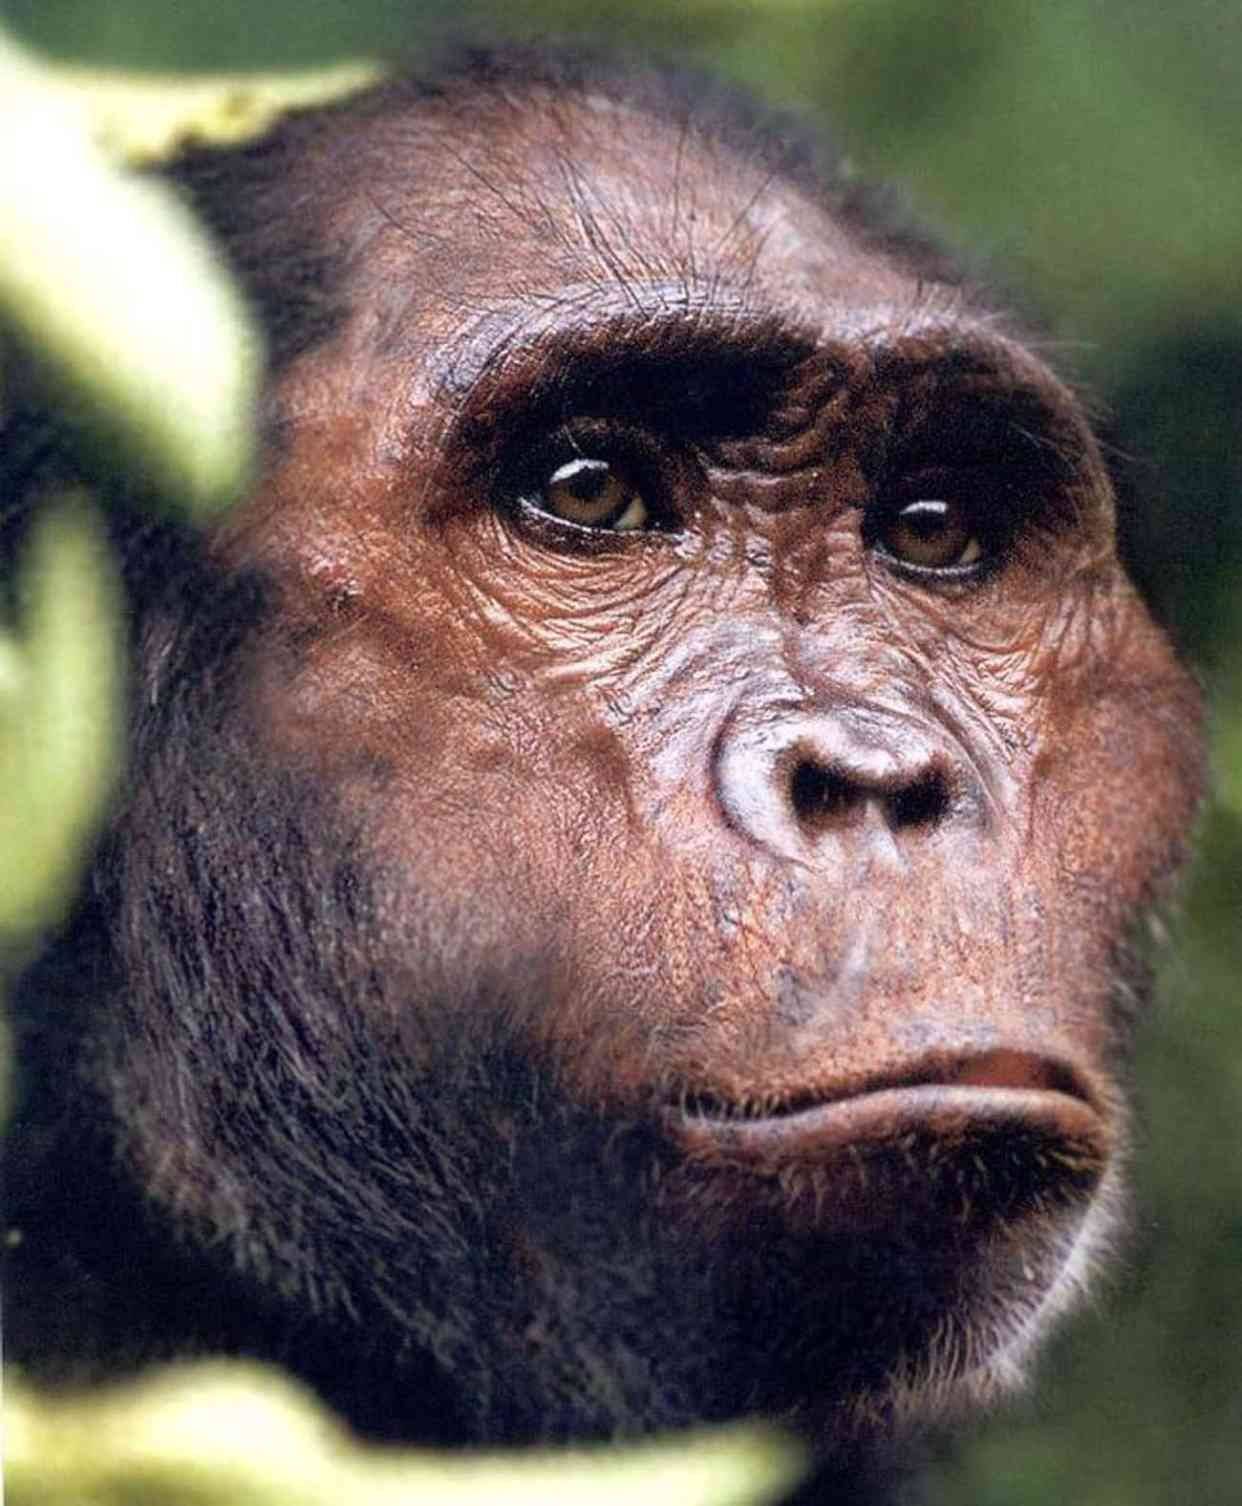 阿法南方古猿可能是最著名的早期人类物种,迄今为止发现了300多具遗骸